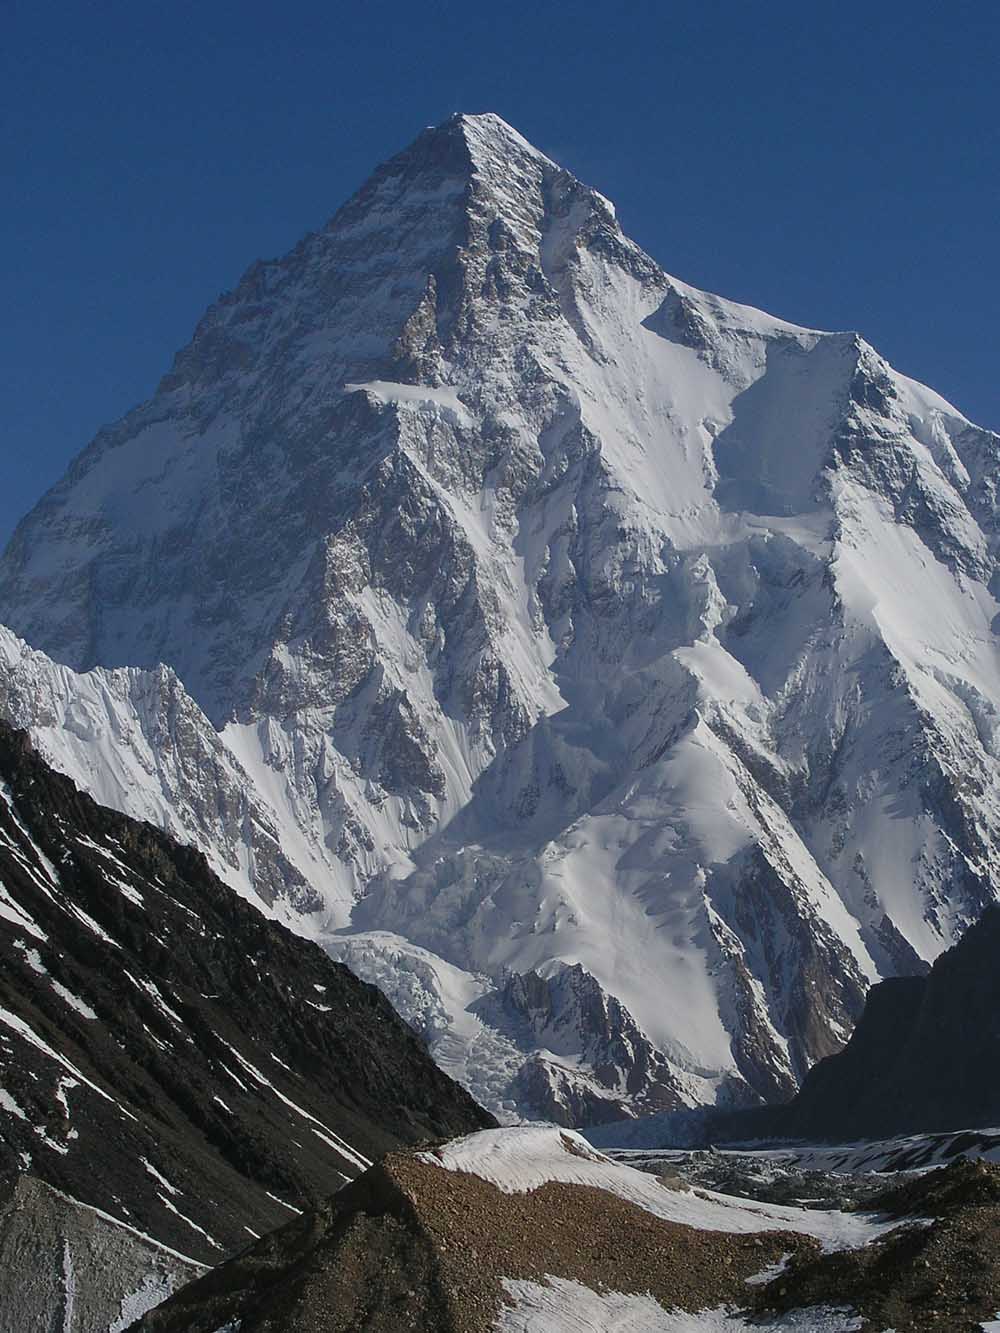 К2 (Чогори, 8611 м) - второй по высоте восьмитысячник в мире